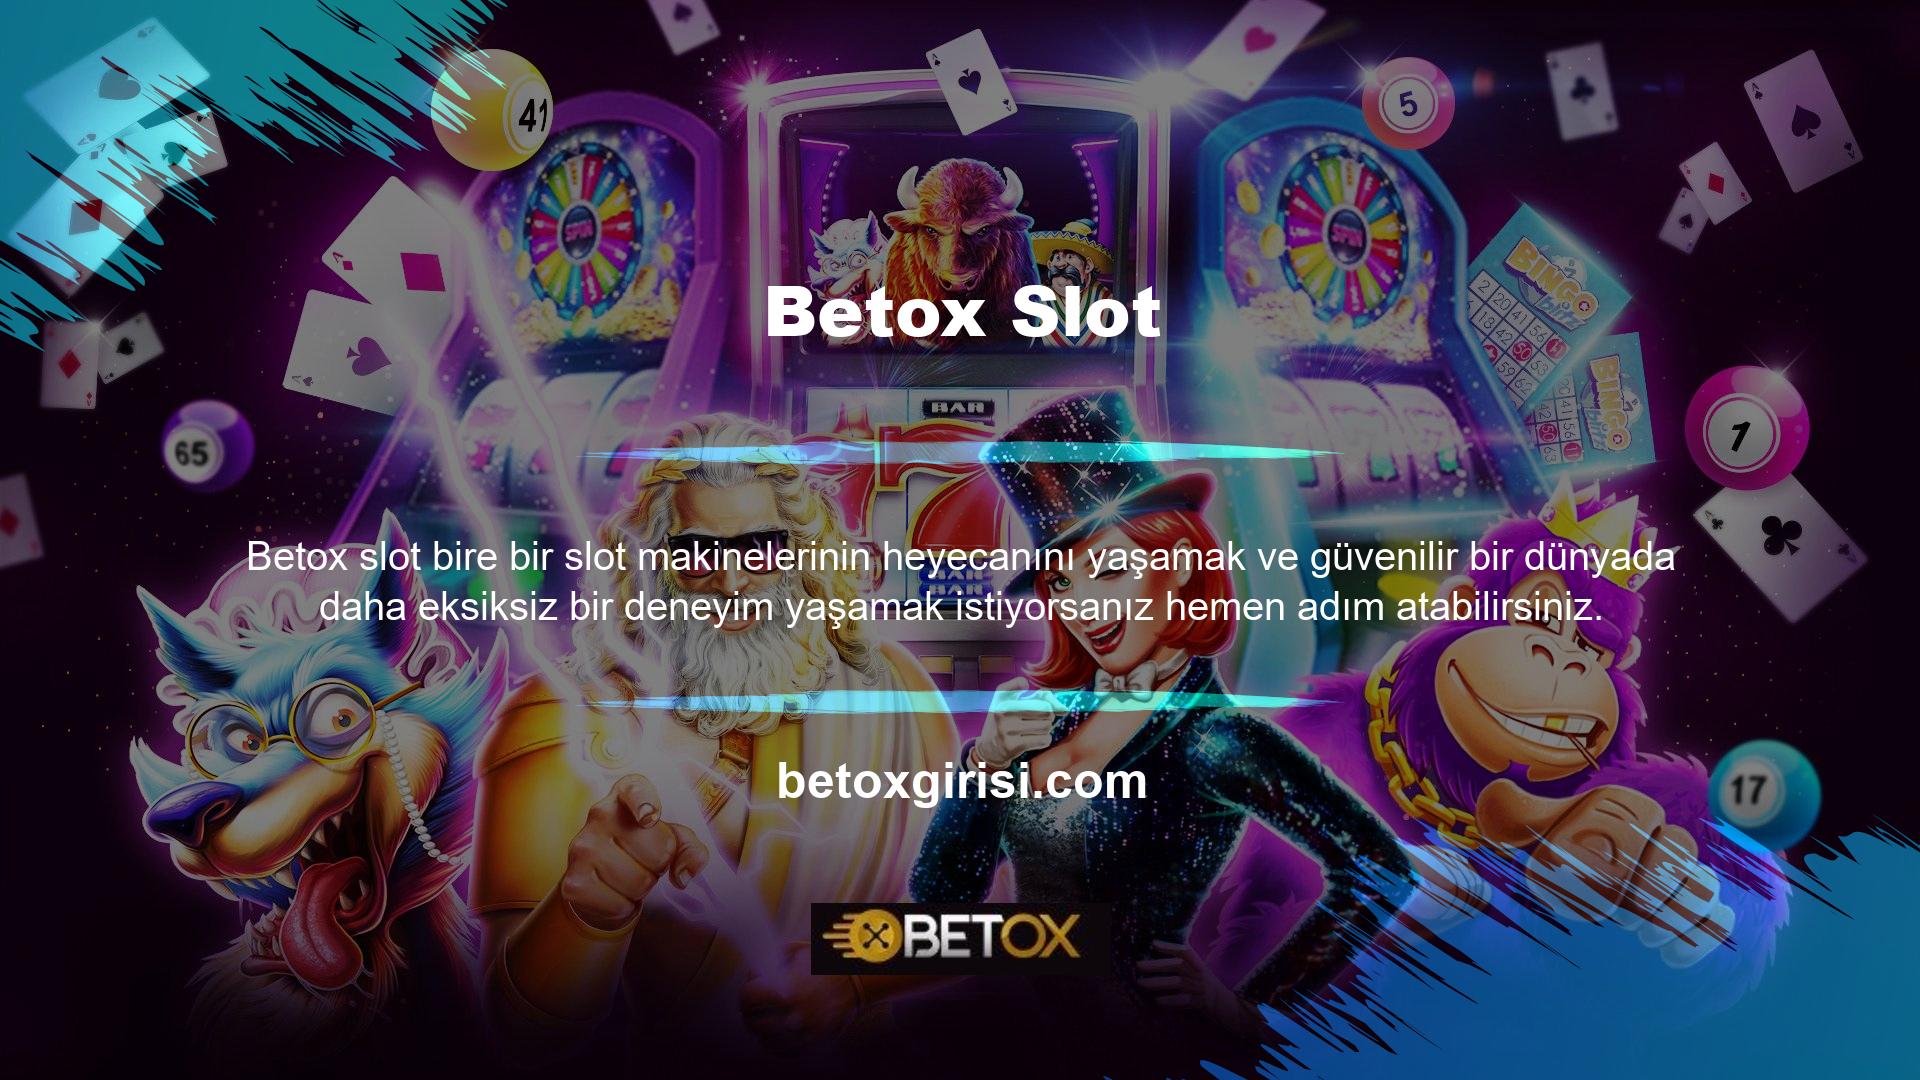 Yeni çağın en eksiksiz adreslerinden biri olan Betox, daha eksiksiz bir canlı casino deneyimi sunuyor